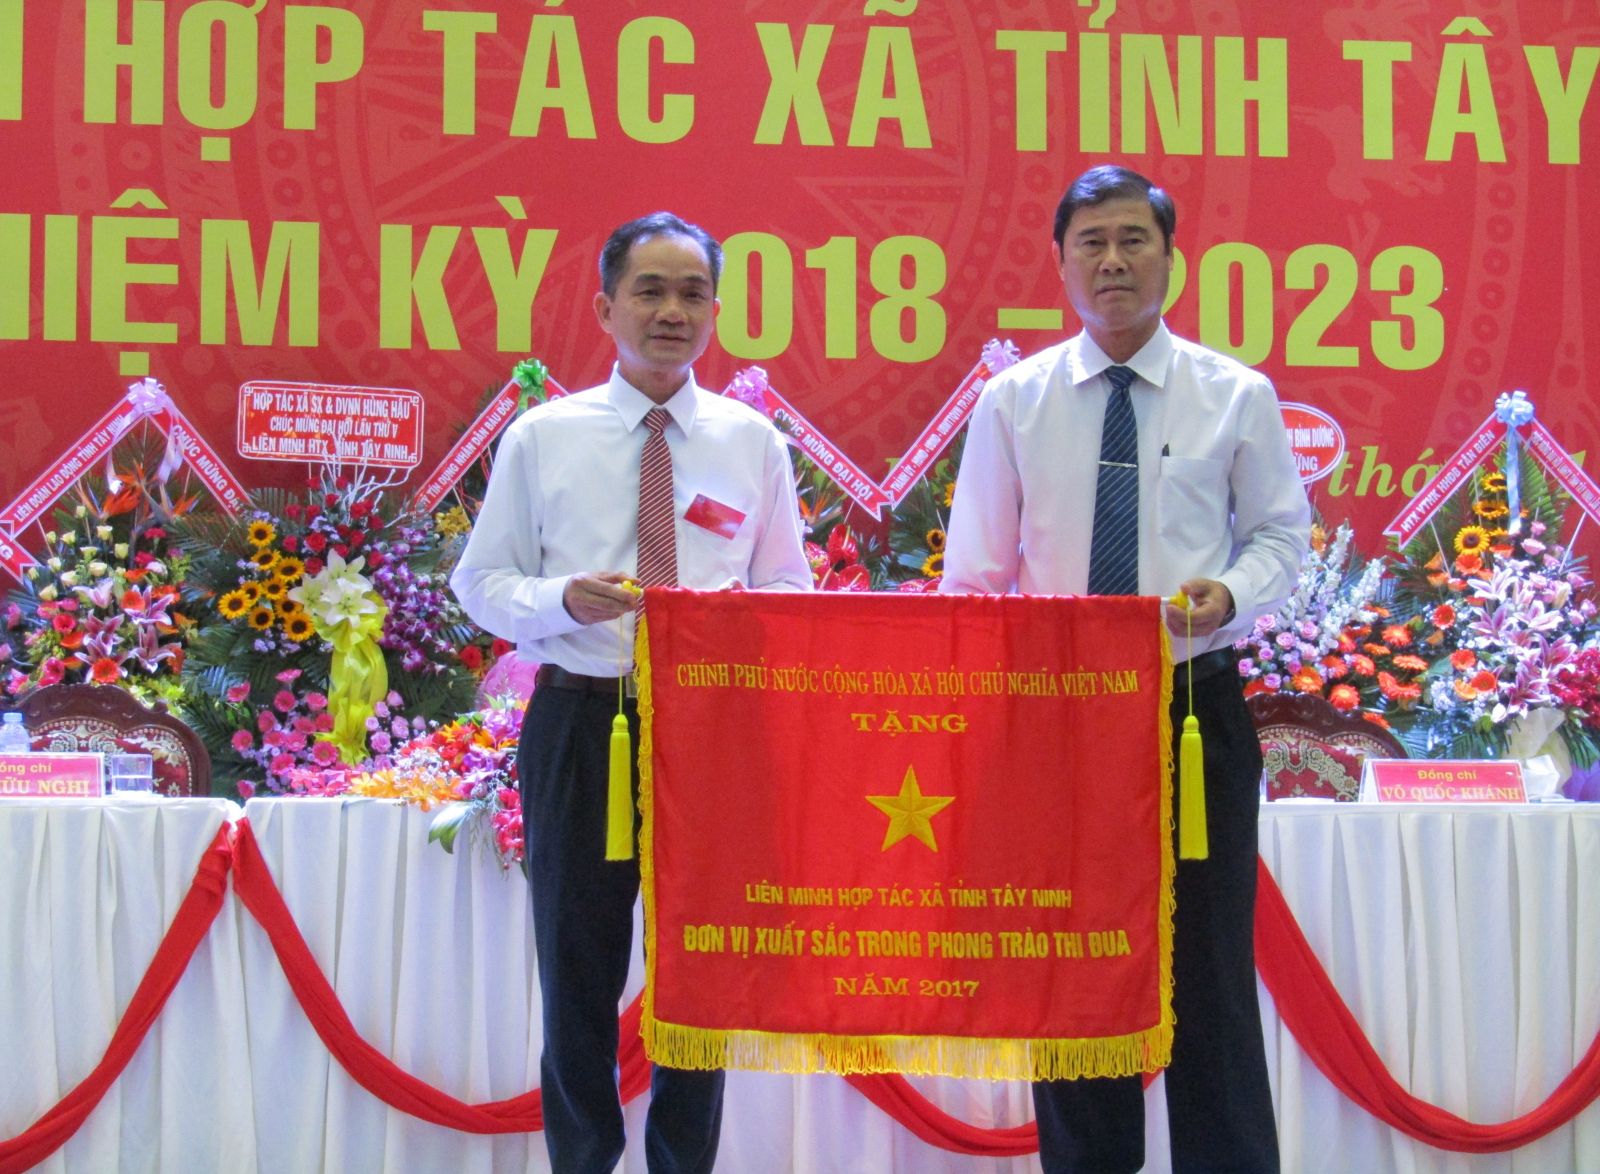 Điểm báo in Tây Ninh ngày 17.11.2018